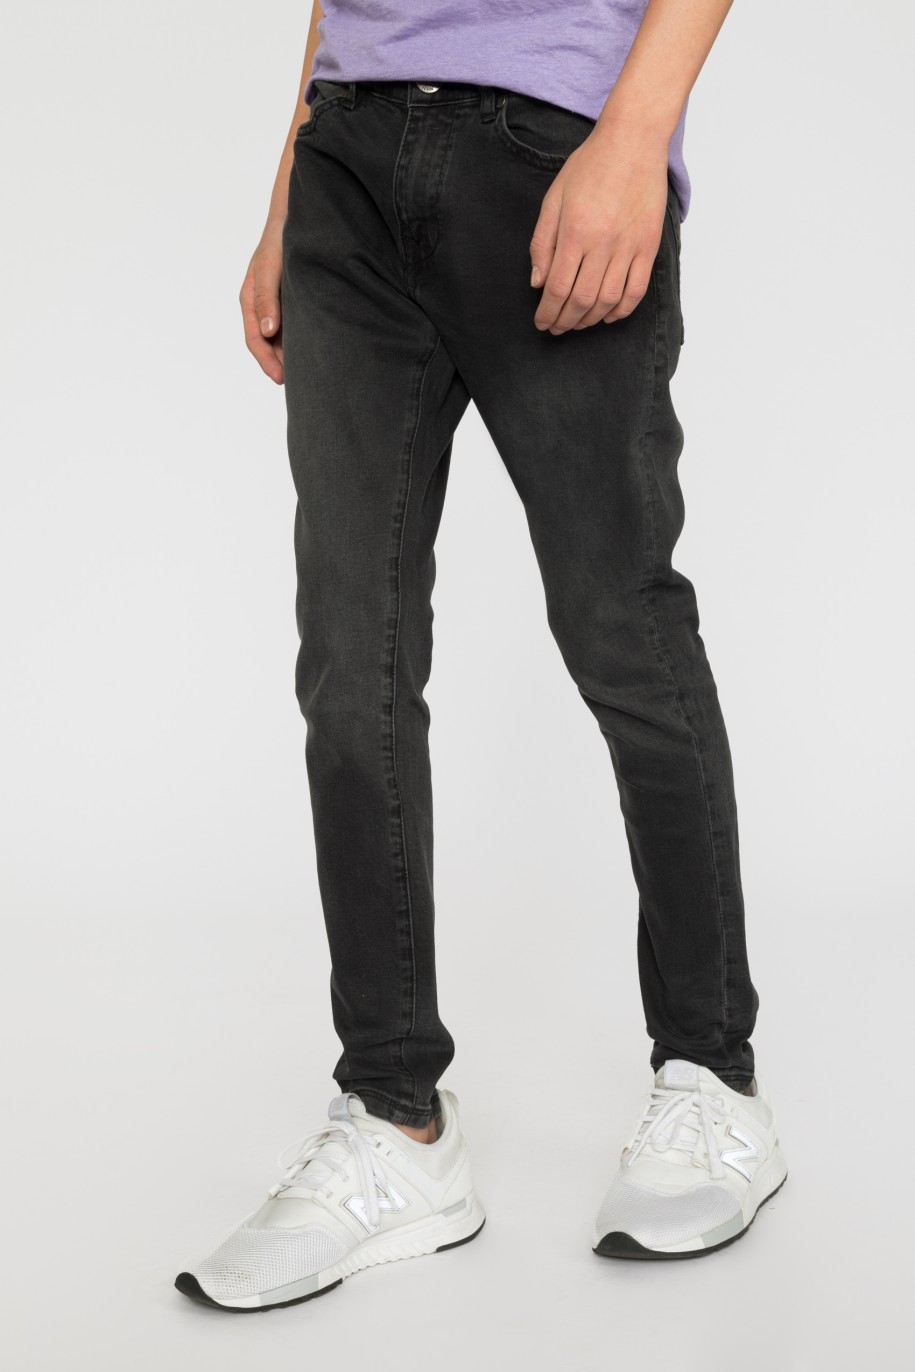 Czarne jeansowe zwężane ku dołowi spodnie dla chłopaka - 33445